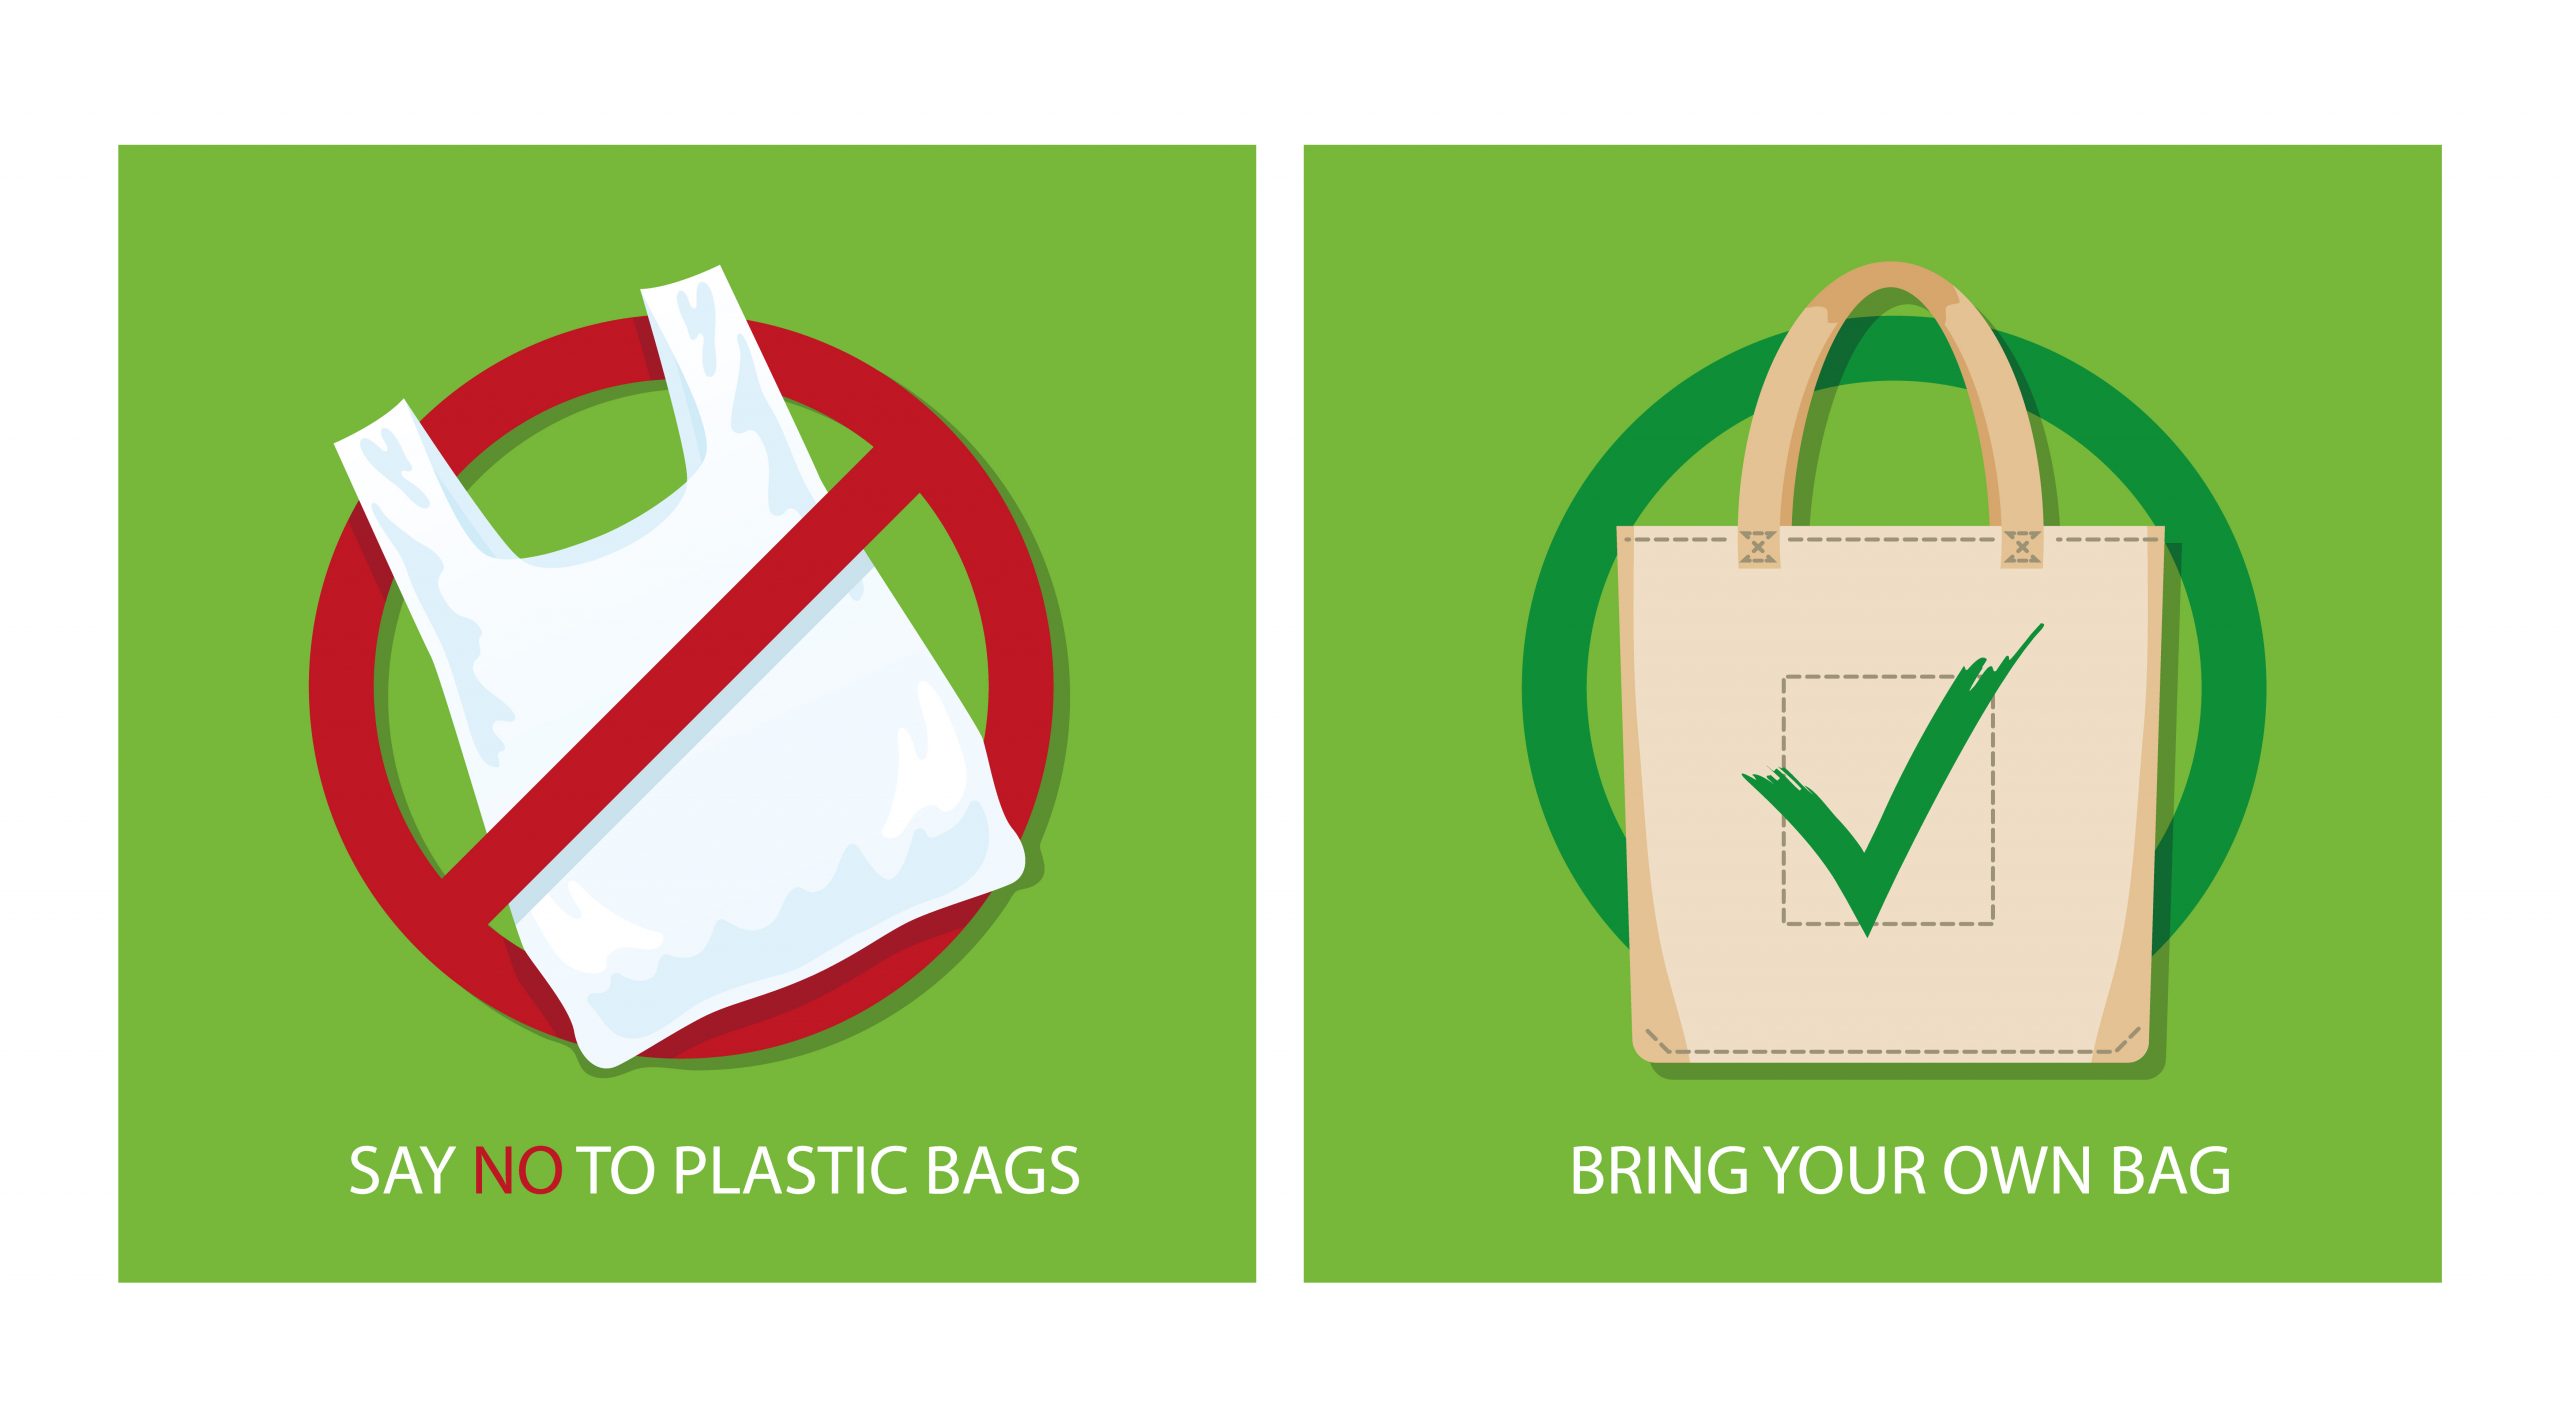 उत्तराखंड में प्लास्टिक बैग से बचने के लिए सब्जी वाले की अनोखी पहल, जानकार आप भी करेंगे तारीफ़